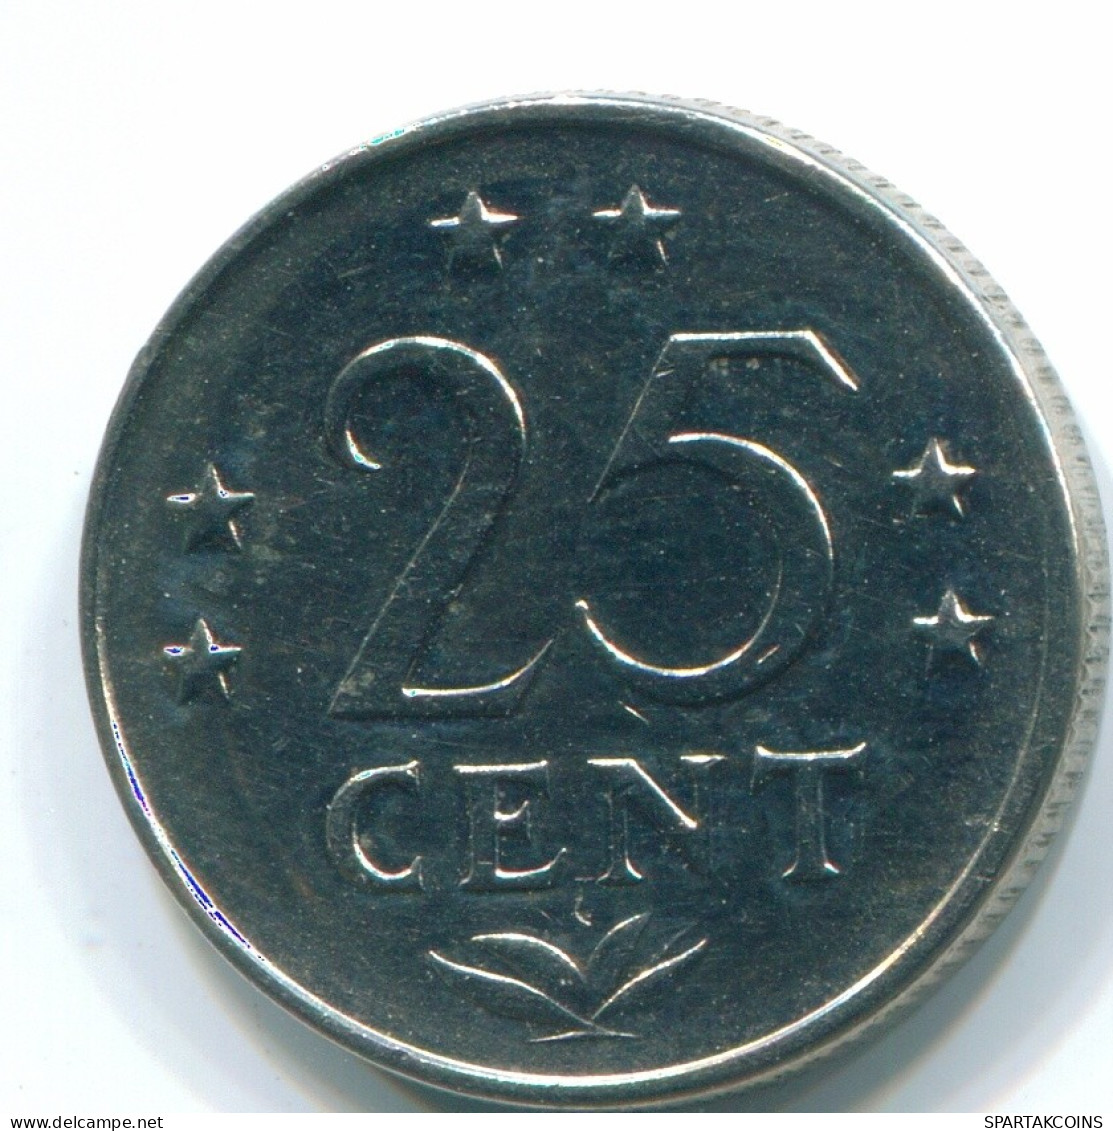 25 CENTS 1971 NIEDERLÄNDISCHE ANTILLEN Nickel Koloniale Münze #S11581.D.A - Niederländische Antillen